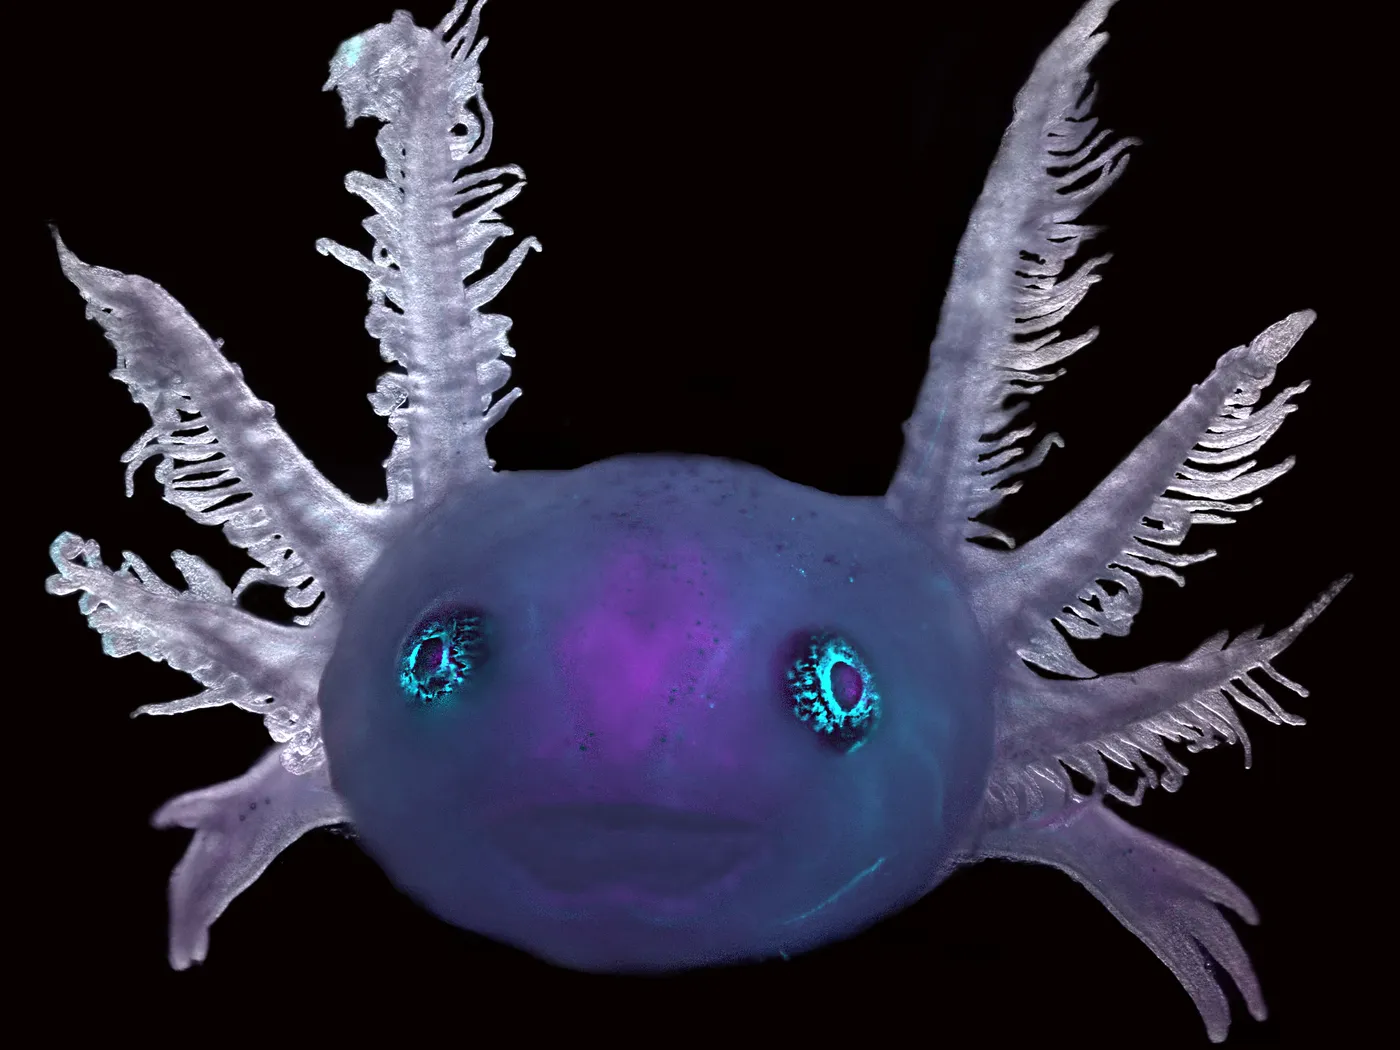 A purple axolotl face